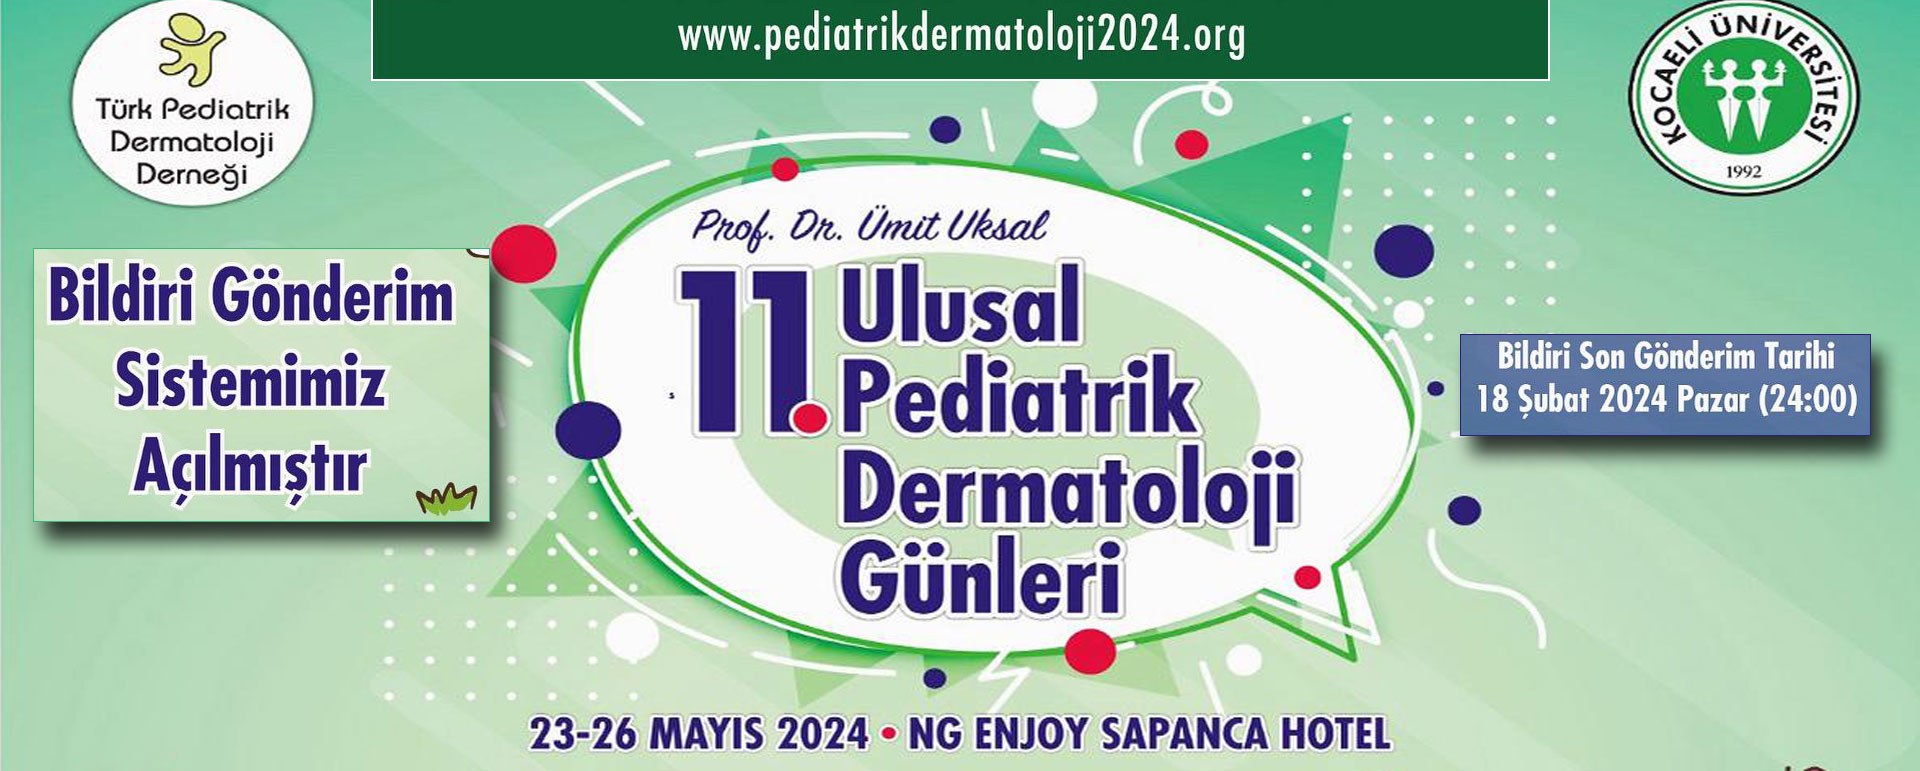 11. Prof. Dr. Ümit Ukşal Ulusal Pediatrik Dermatoloji Günleri